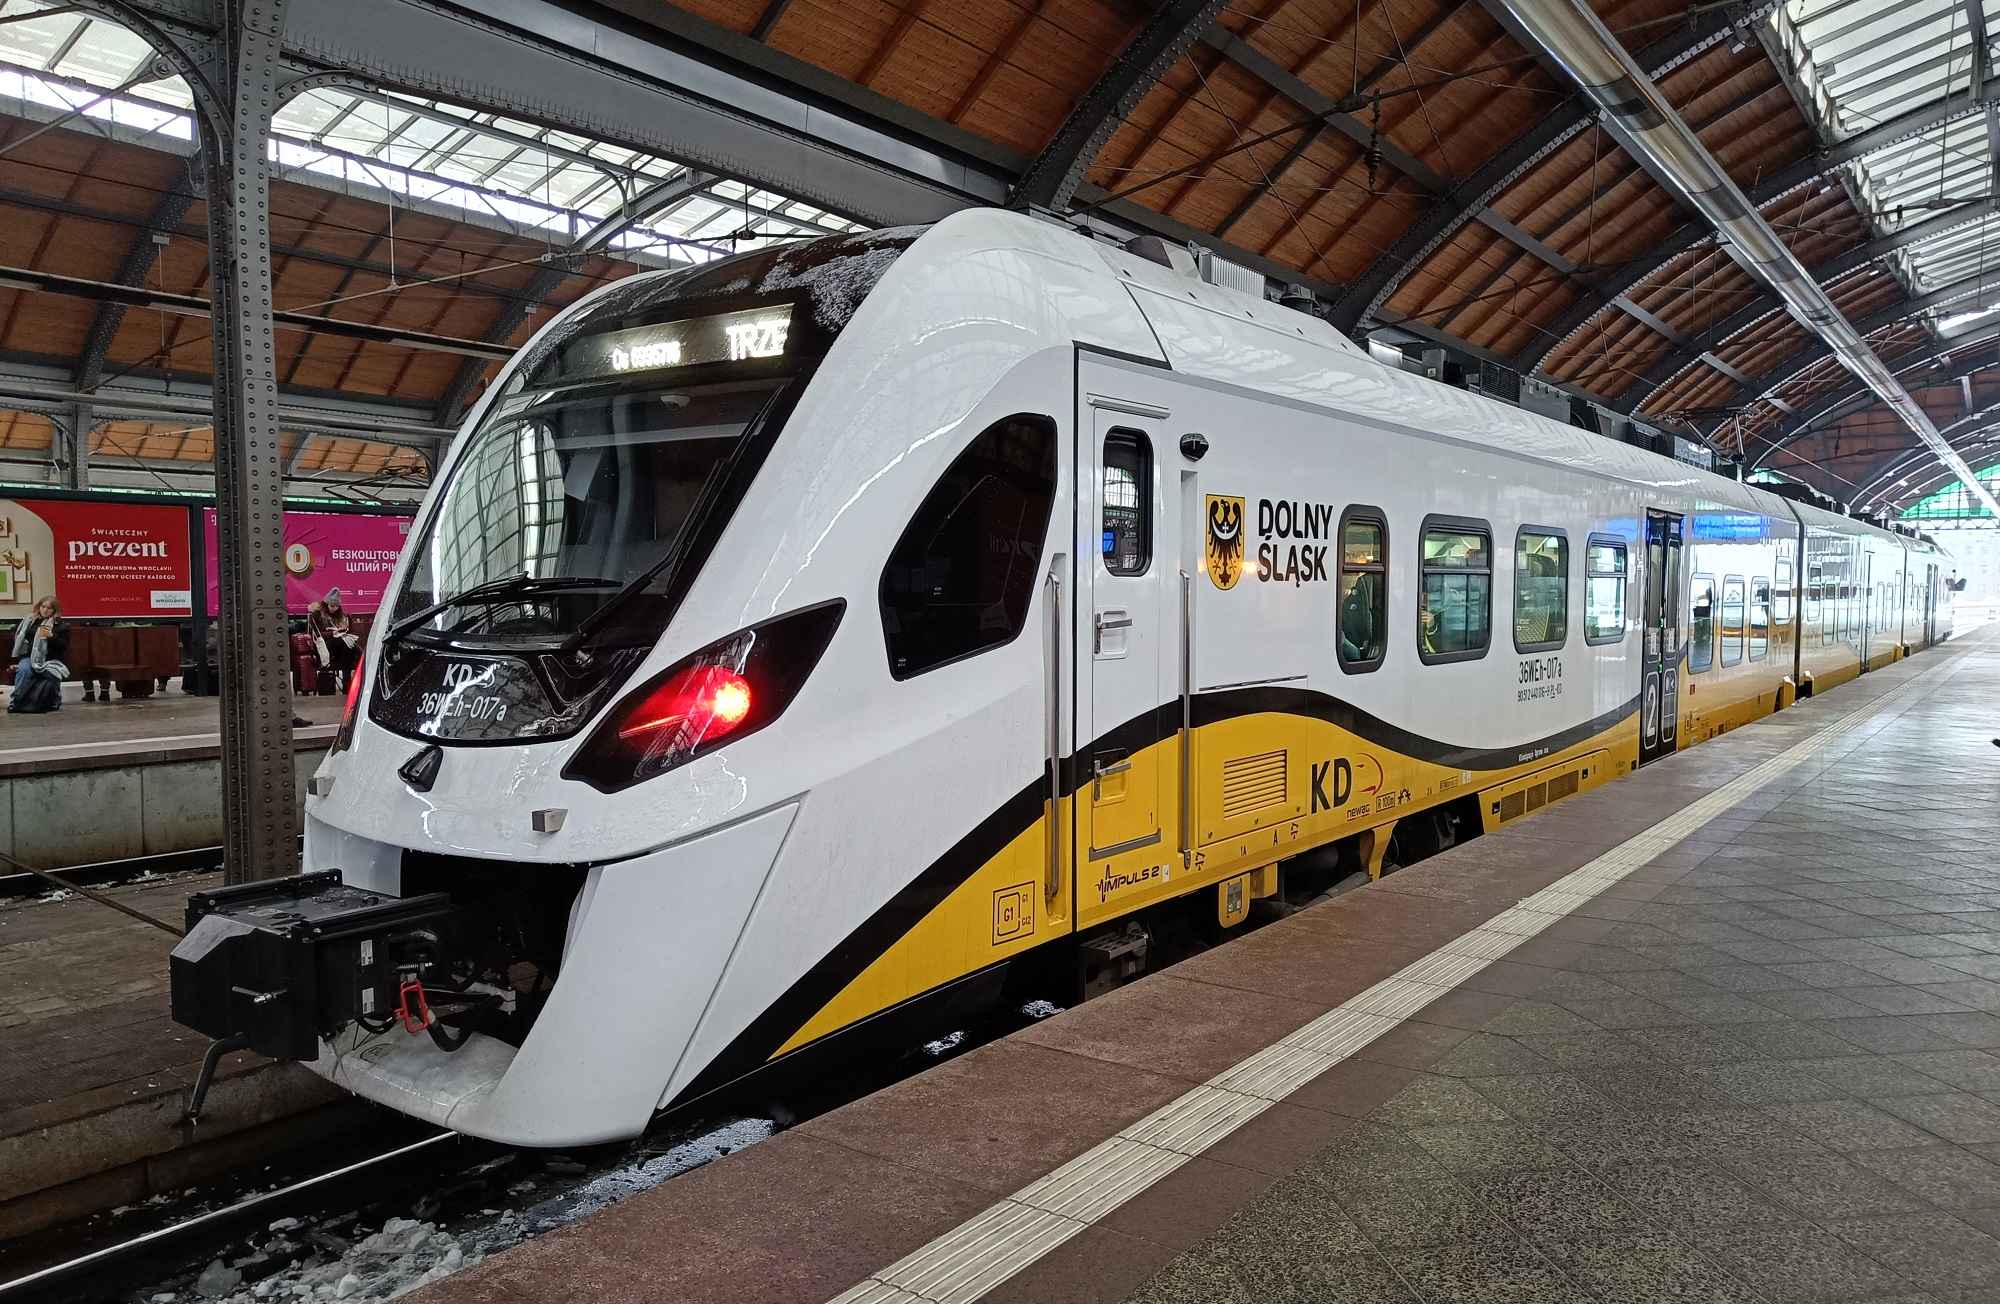 Pociągi na trasie z Wrocławia do Świnoujścia wyruszą już 24 czerwca! Koleje Dolnośląskie poinformowały, że wraz z uruchomieniem nowego połączenia pasażerowie będą mogli skorzystać z wizualnej rezerwacji miejsc.